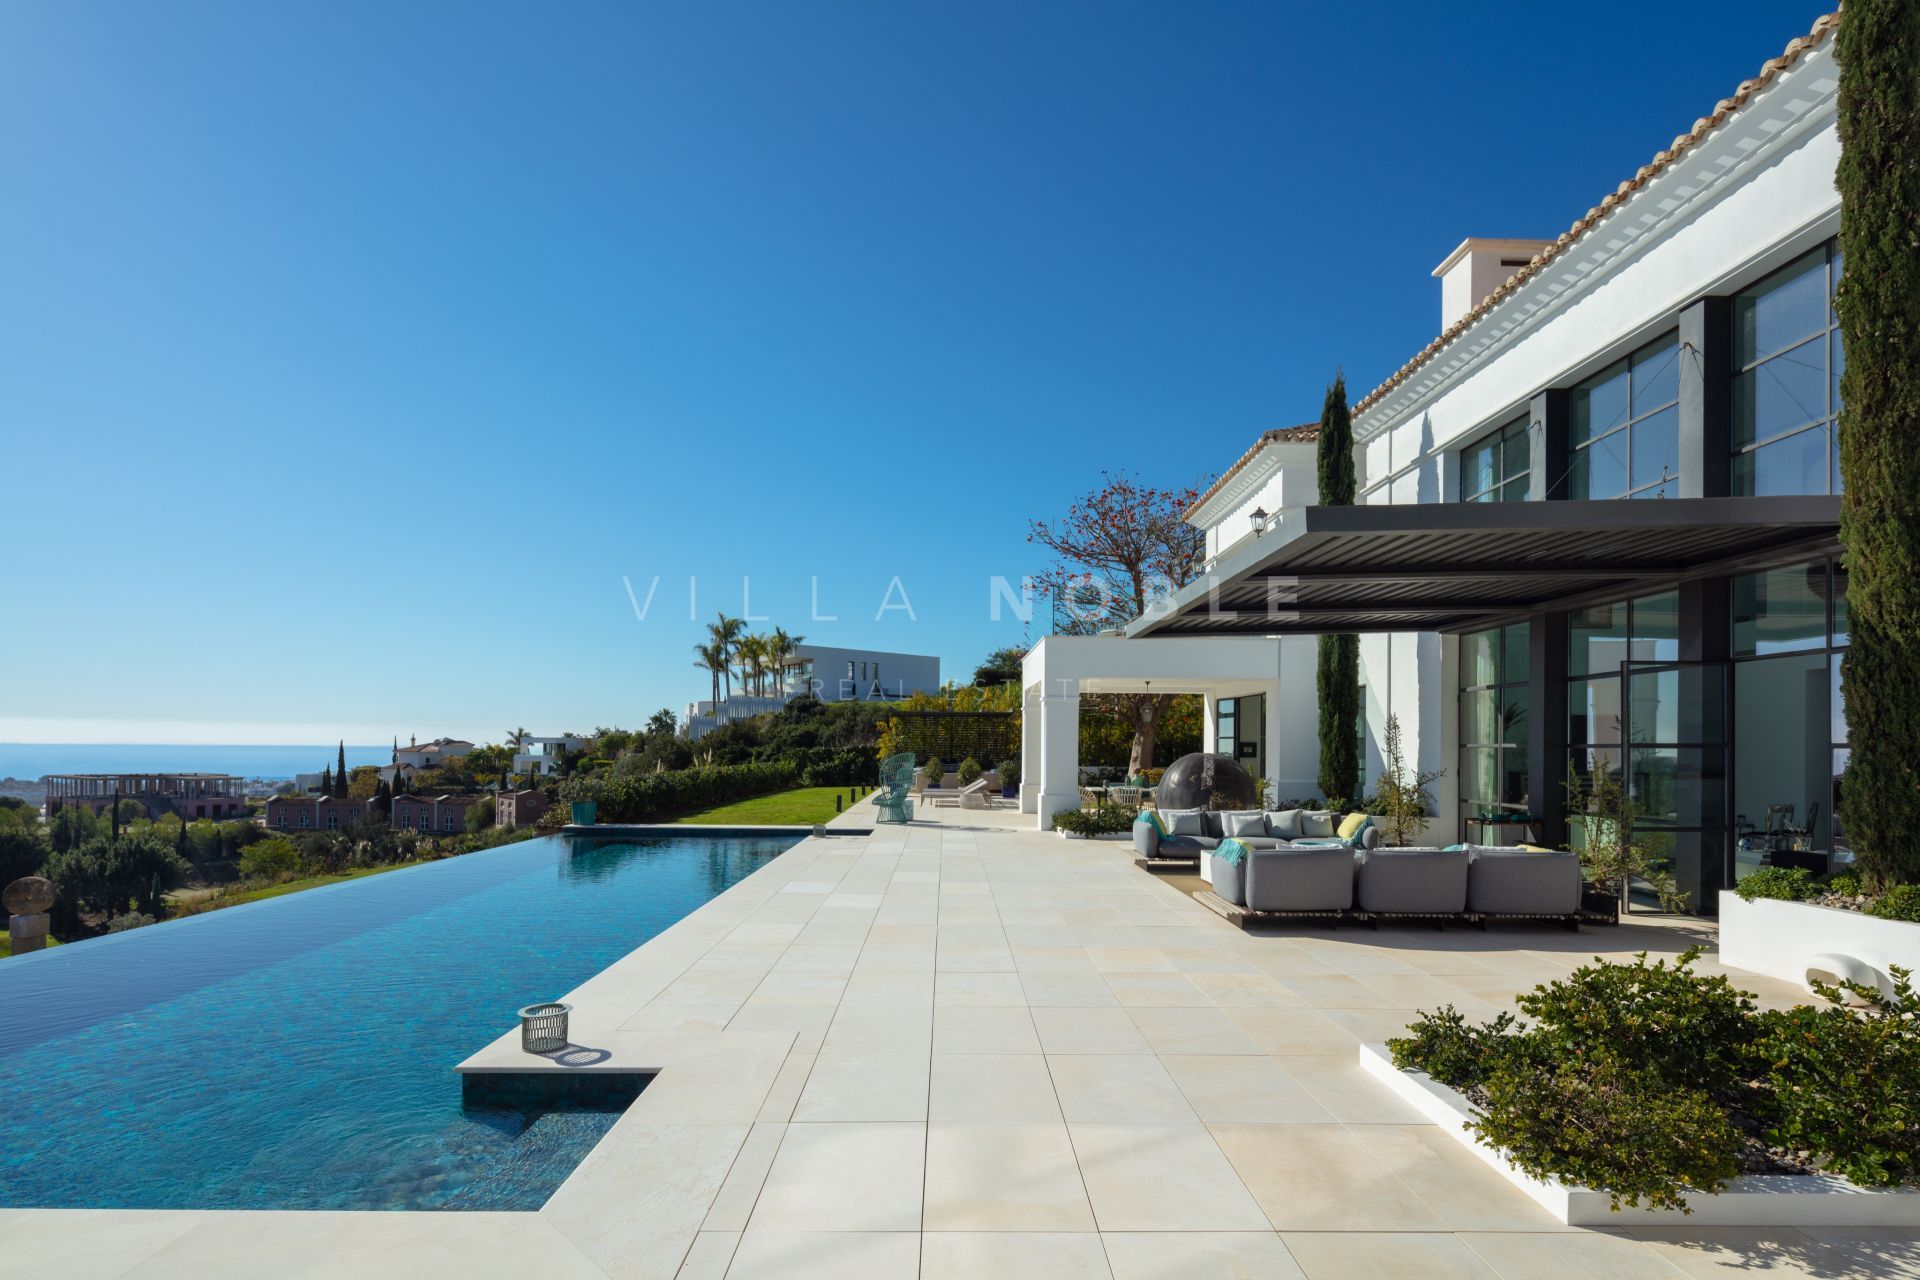 6 Bedrooms Villa with Panoramic Views in Los Flamingos, Marbella